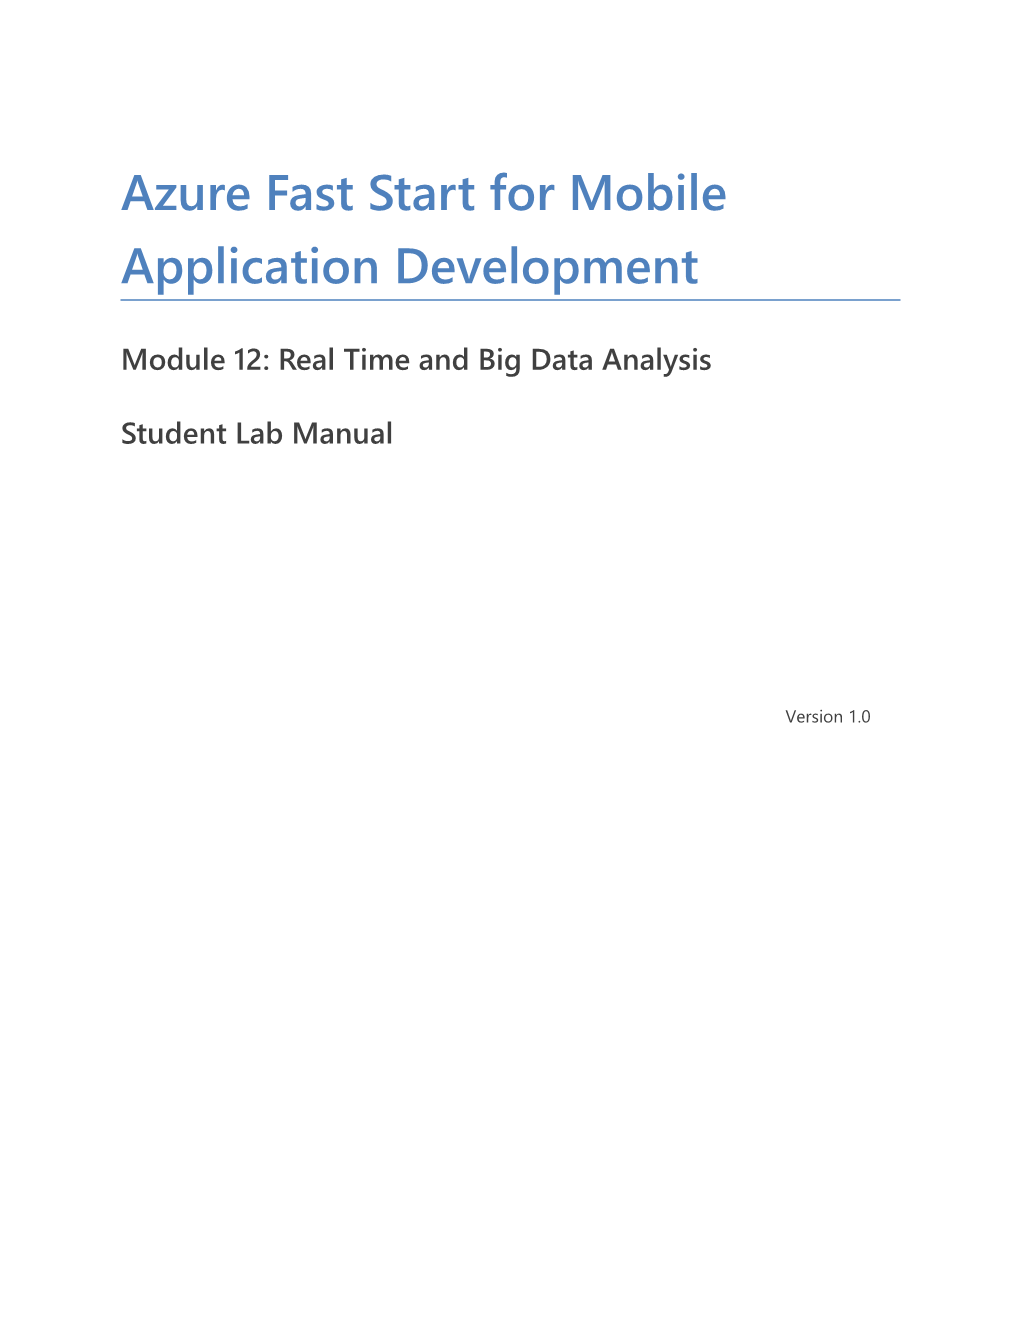 Azure Fast Start for Mobile Application Development